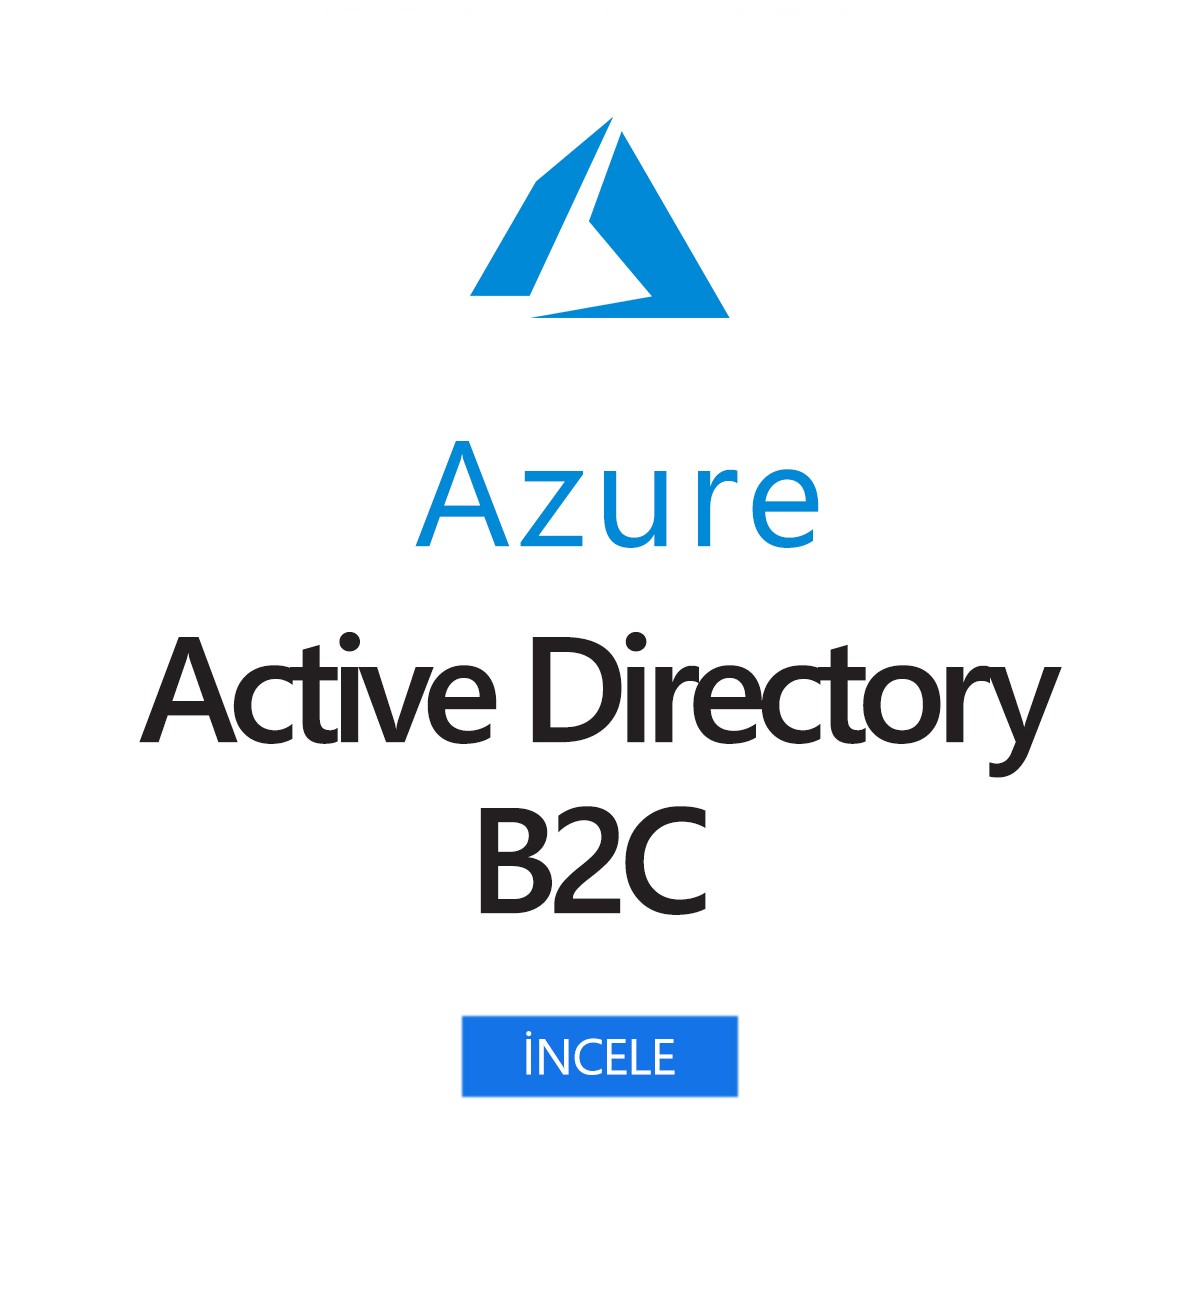 Azure Active Directory B2C